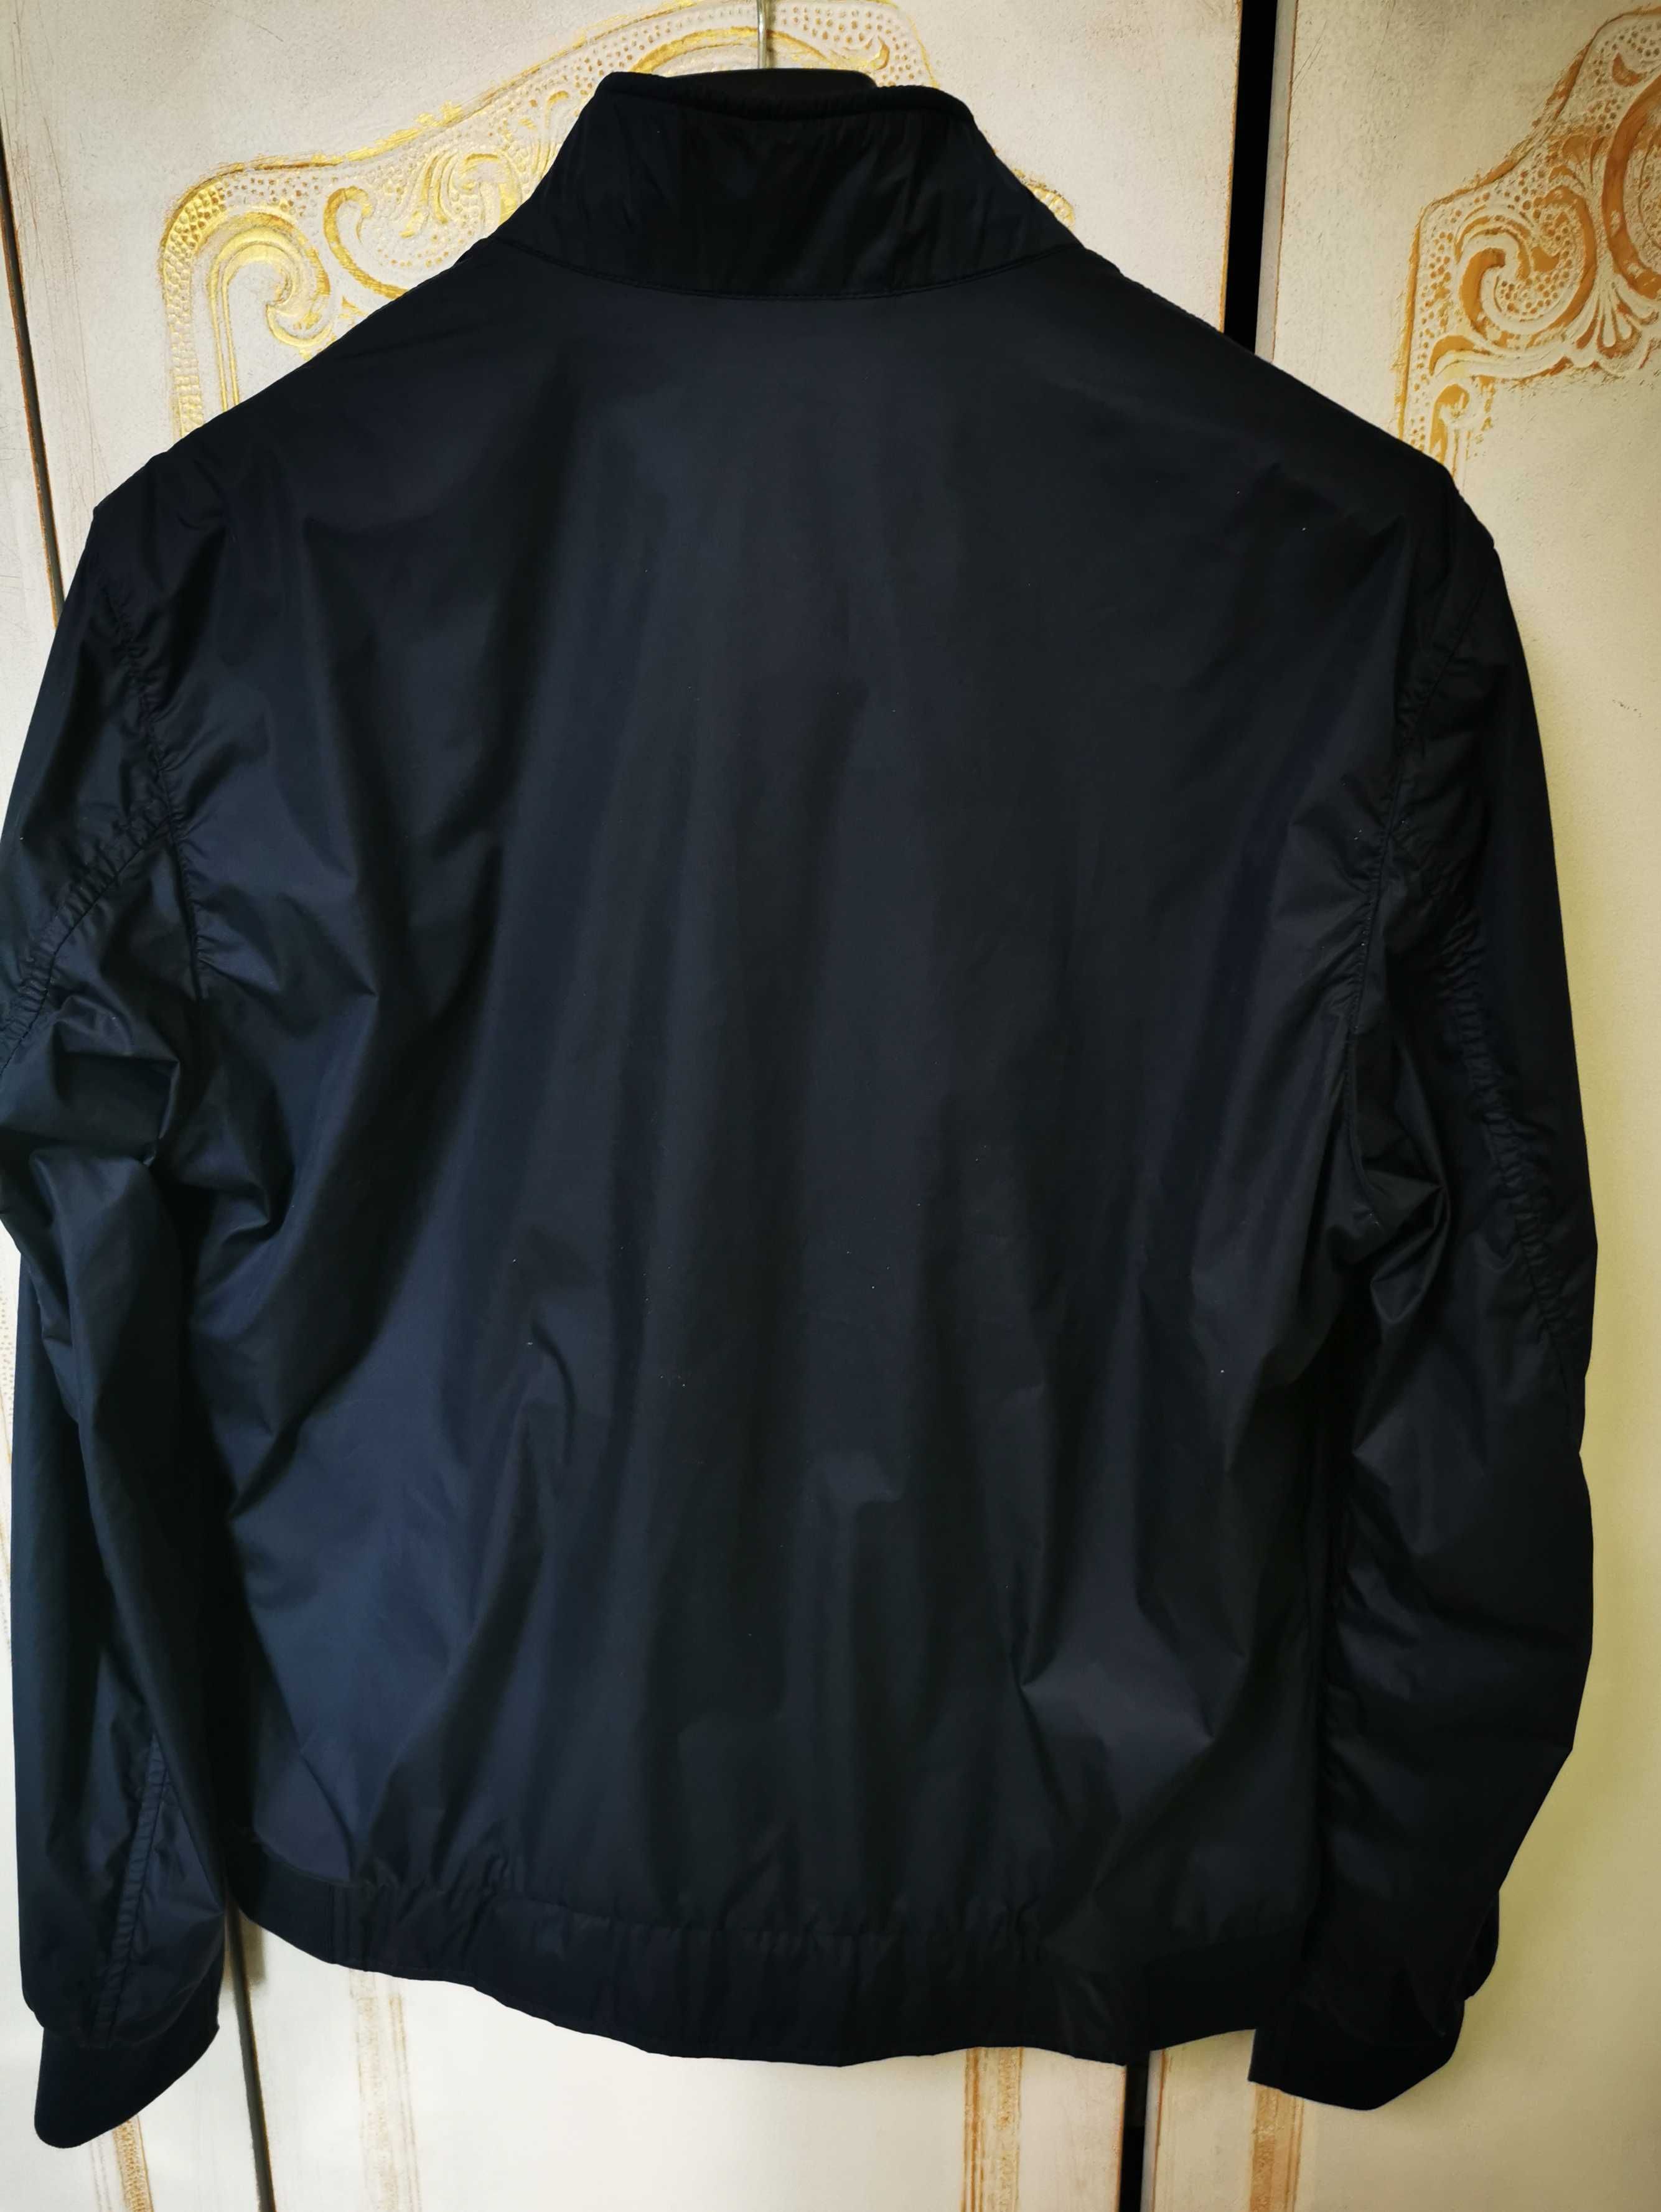 Brax куртка лёгкая ветровка летняя 48р. Синяя оригинал новая